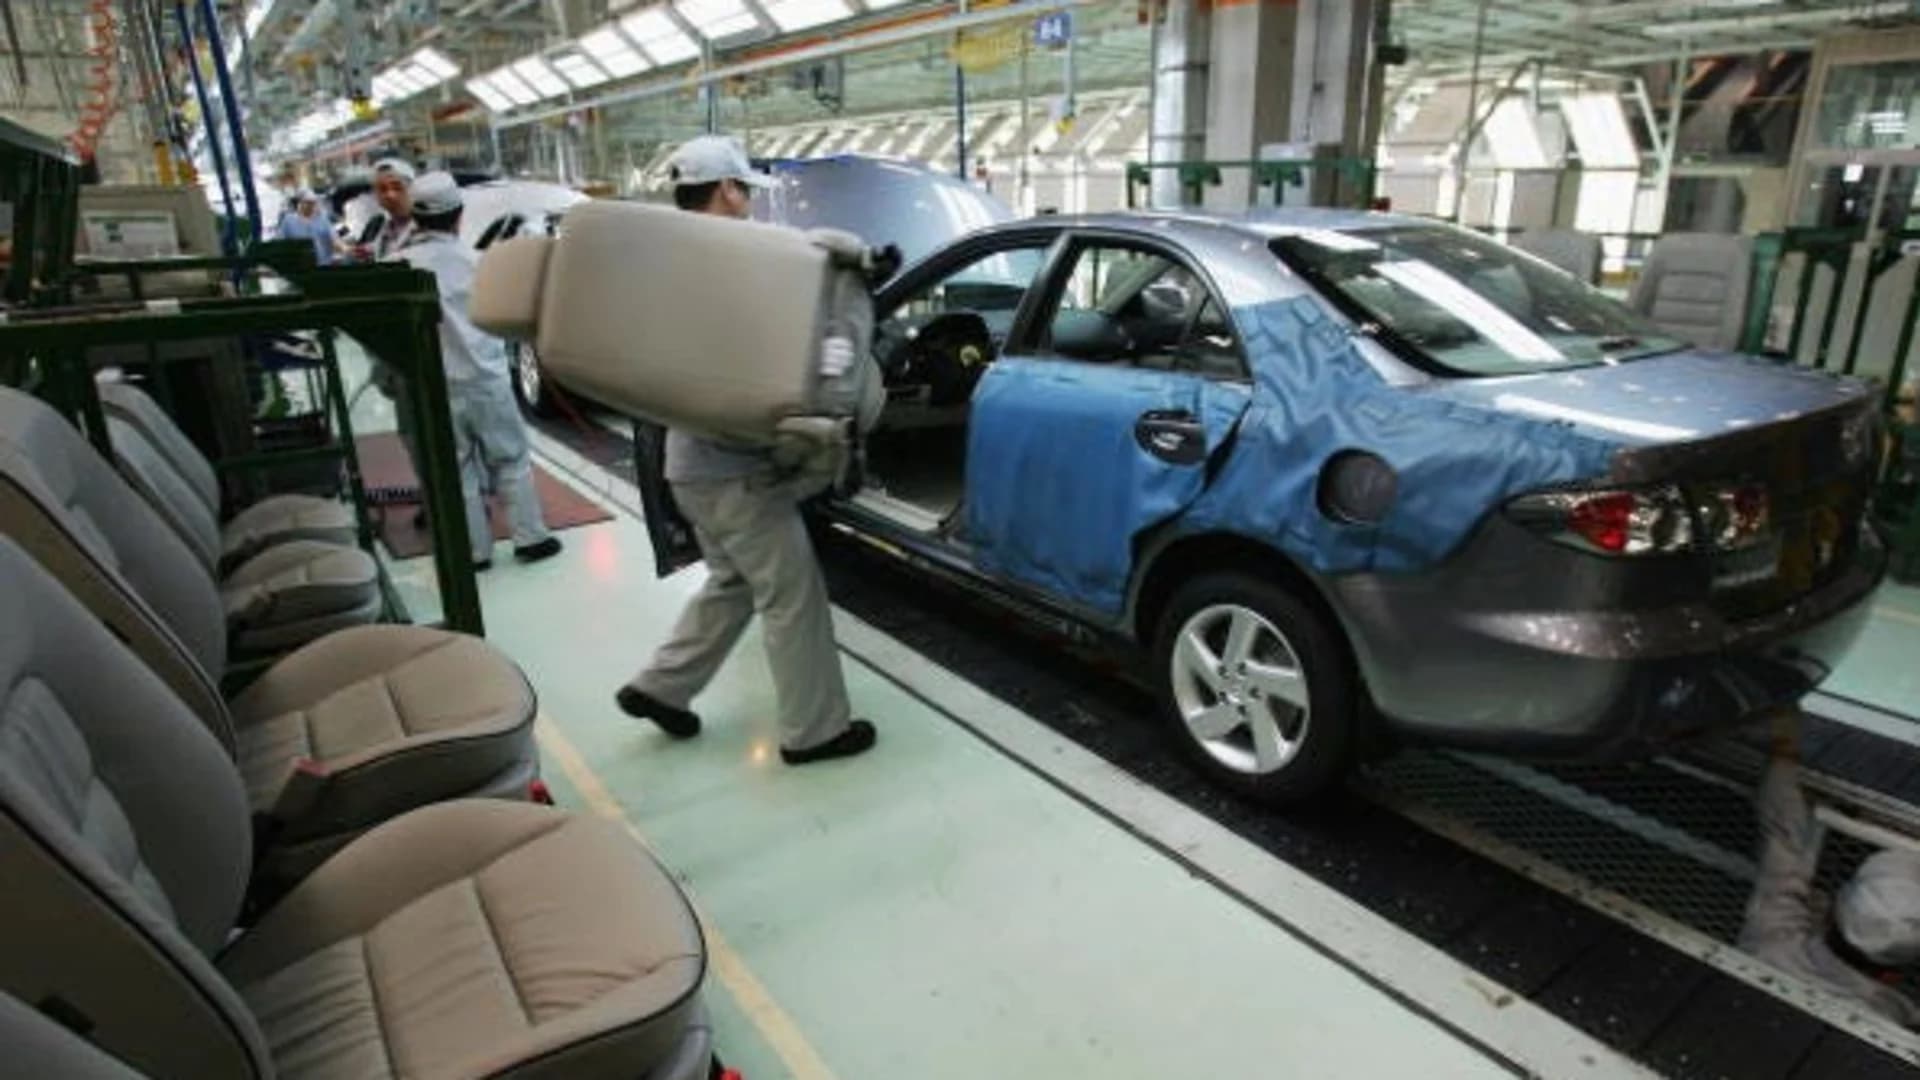 Mazda recalls 270,000 vehicles over Takata airbags